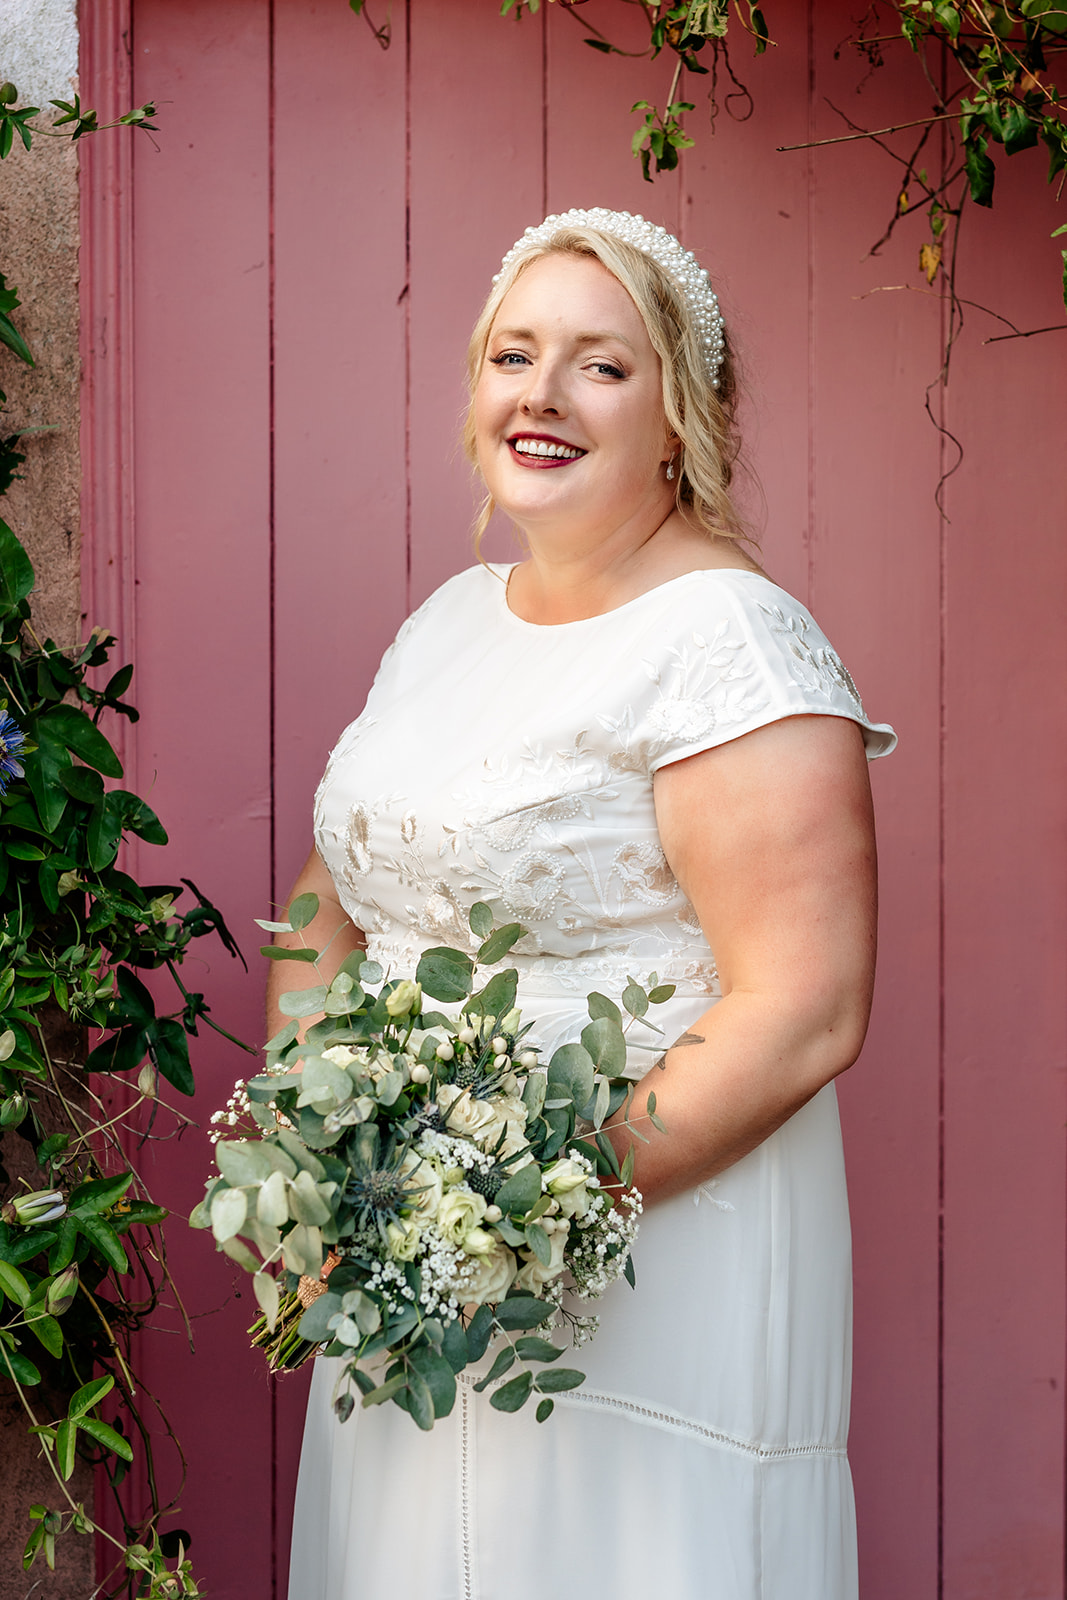 Barnabrow House wedding, Ballycotton Wedding, Cork wedding Photographer, Sarah Kate Photography 